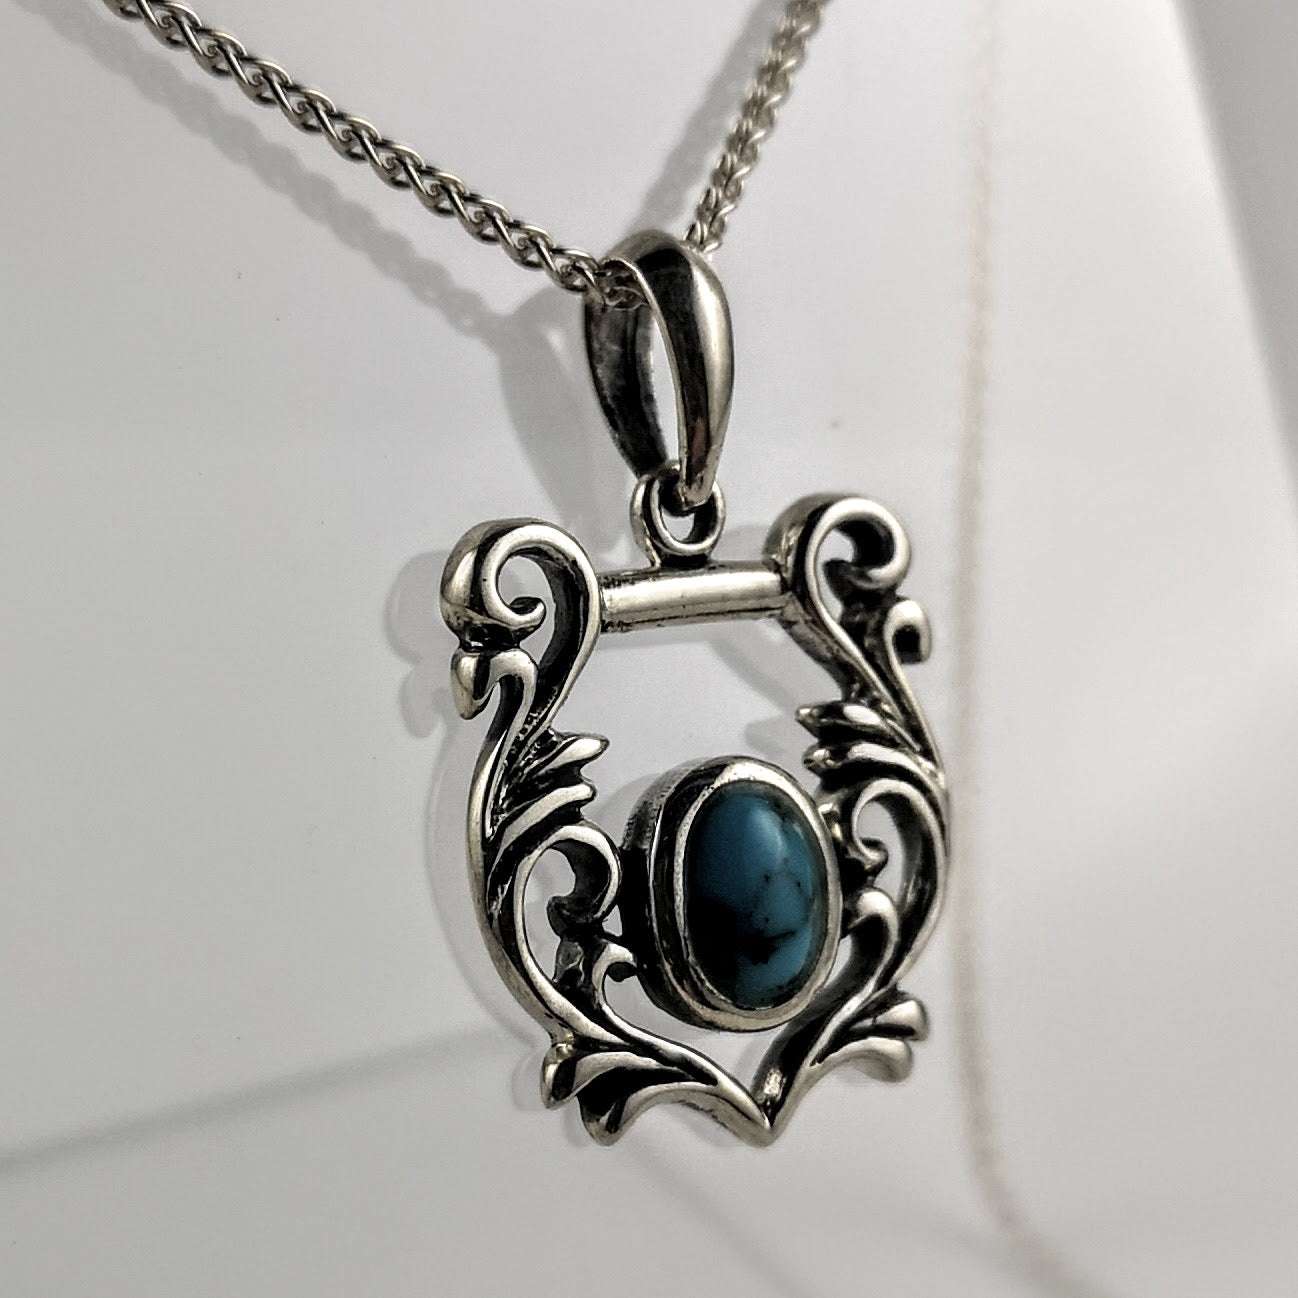 Endearing Celestial Sterling Silver Ornate Pendant